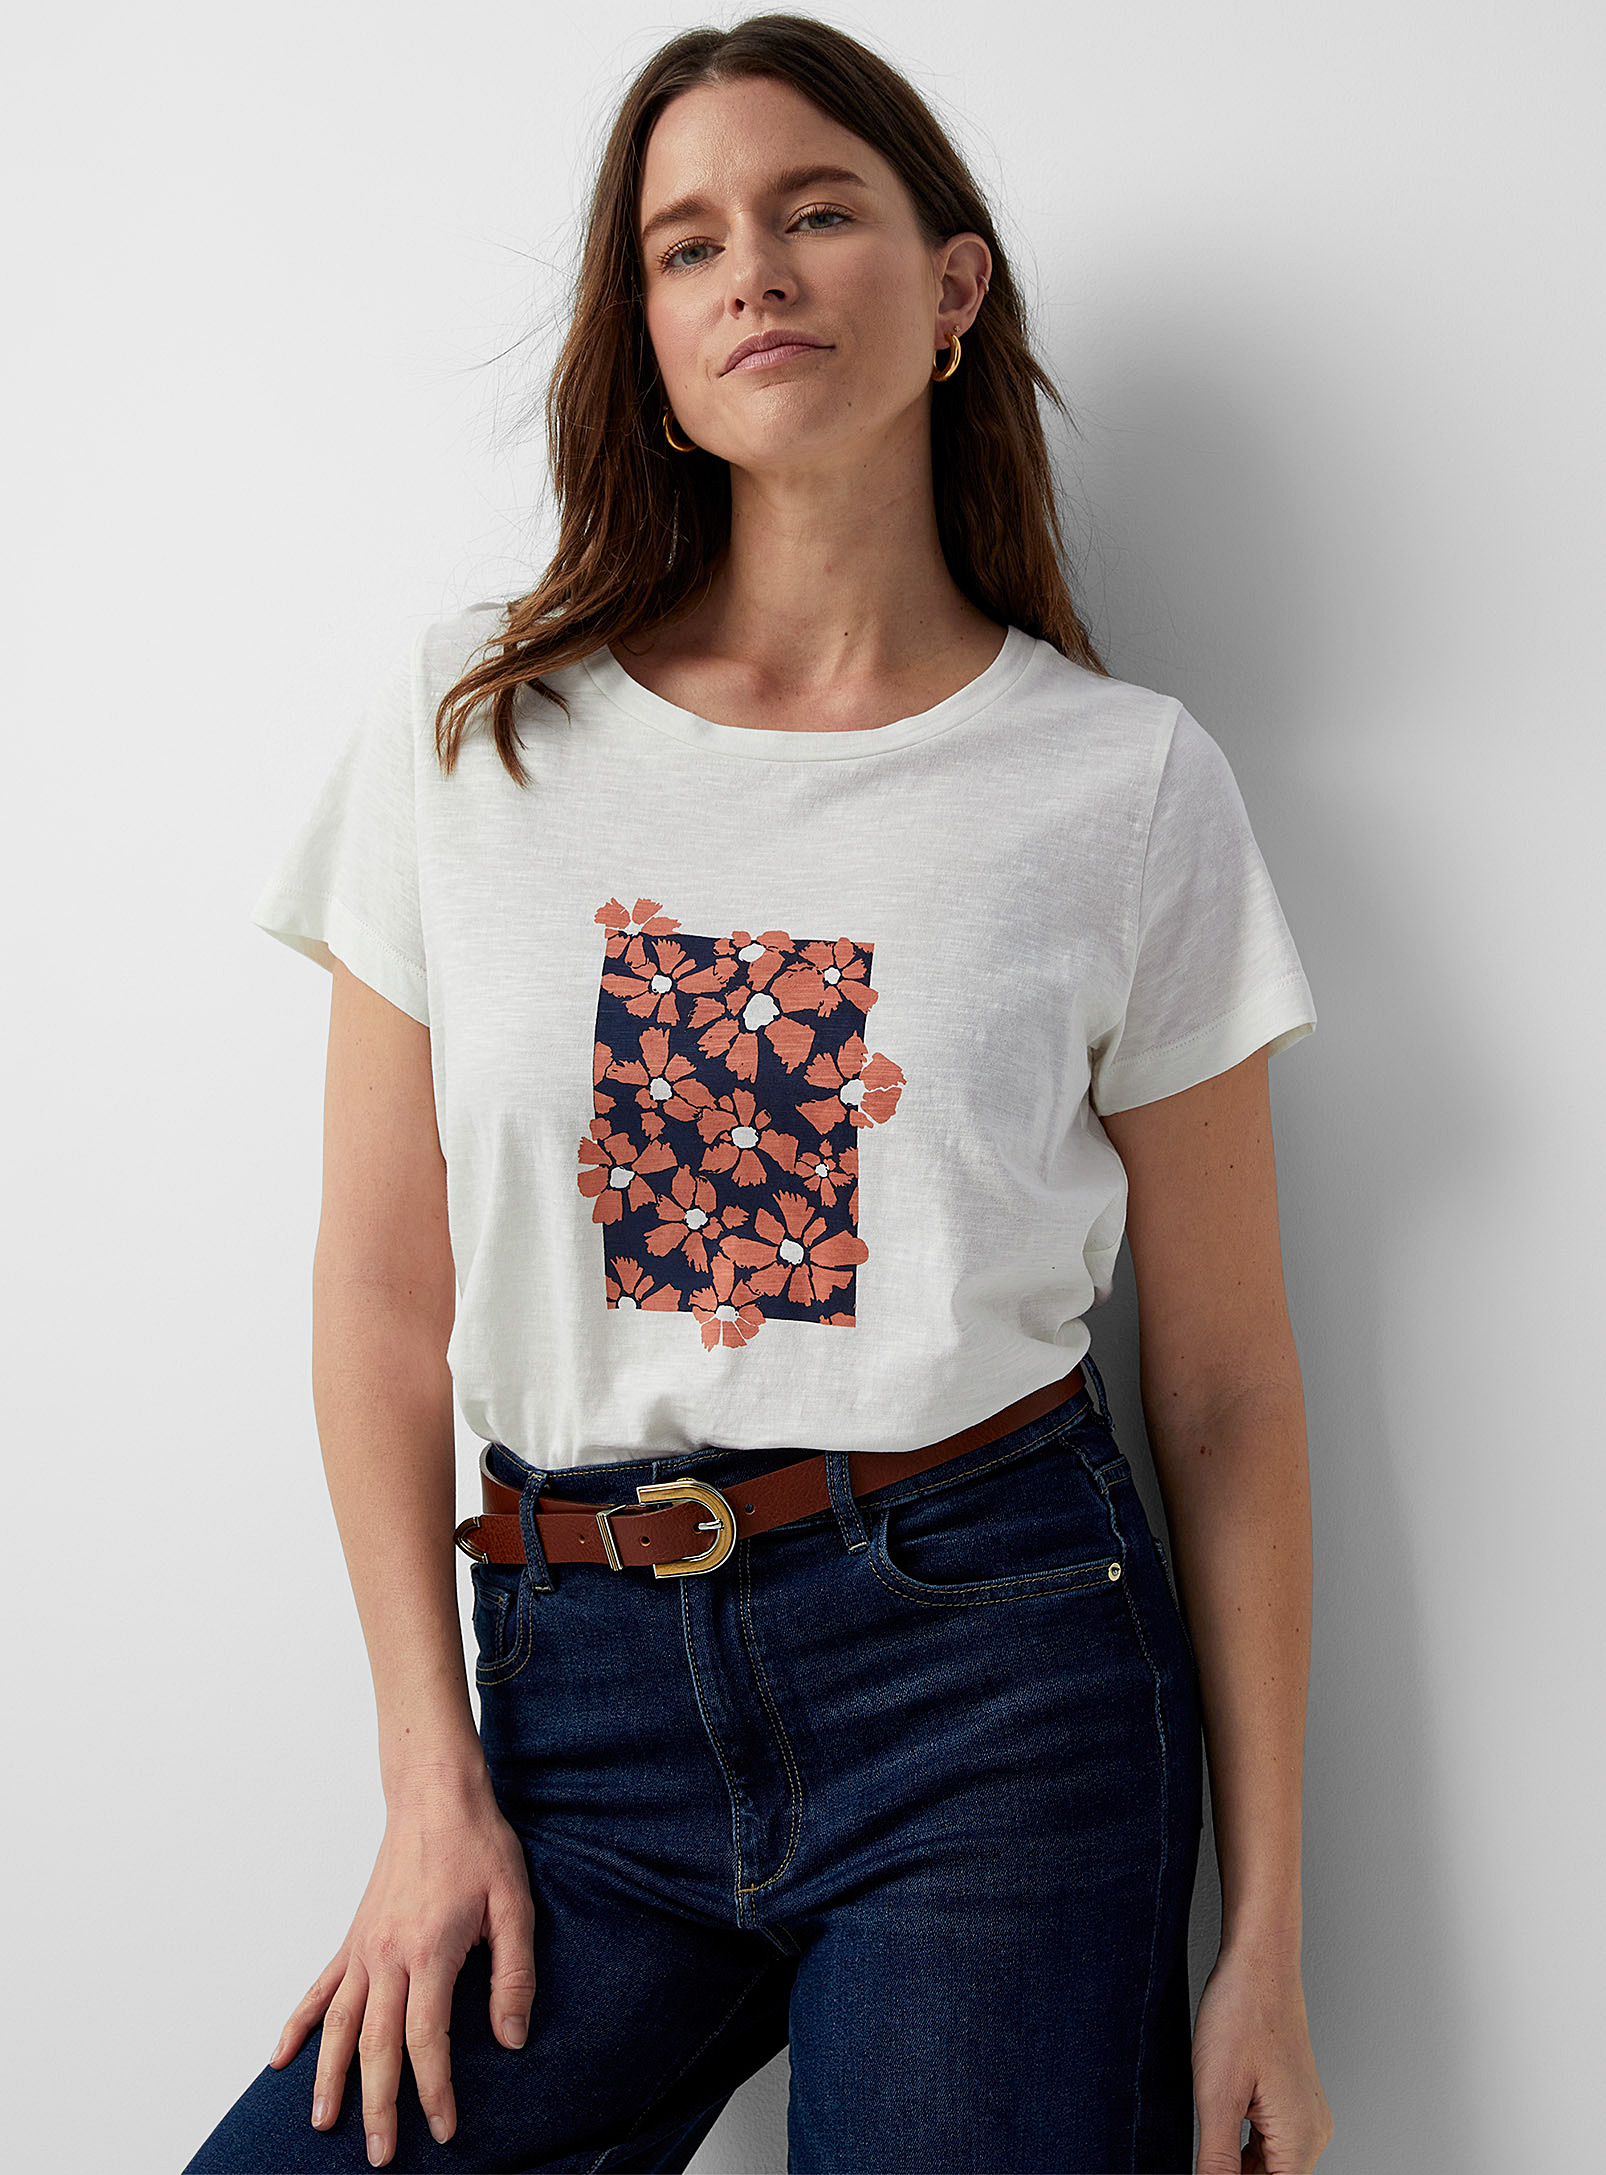 Contemporaine - Le t-shirt motif artistique